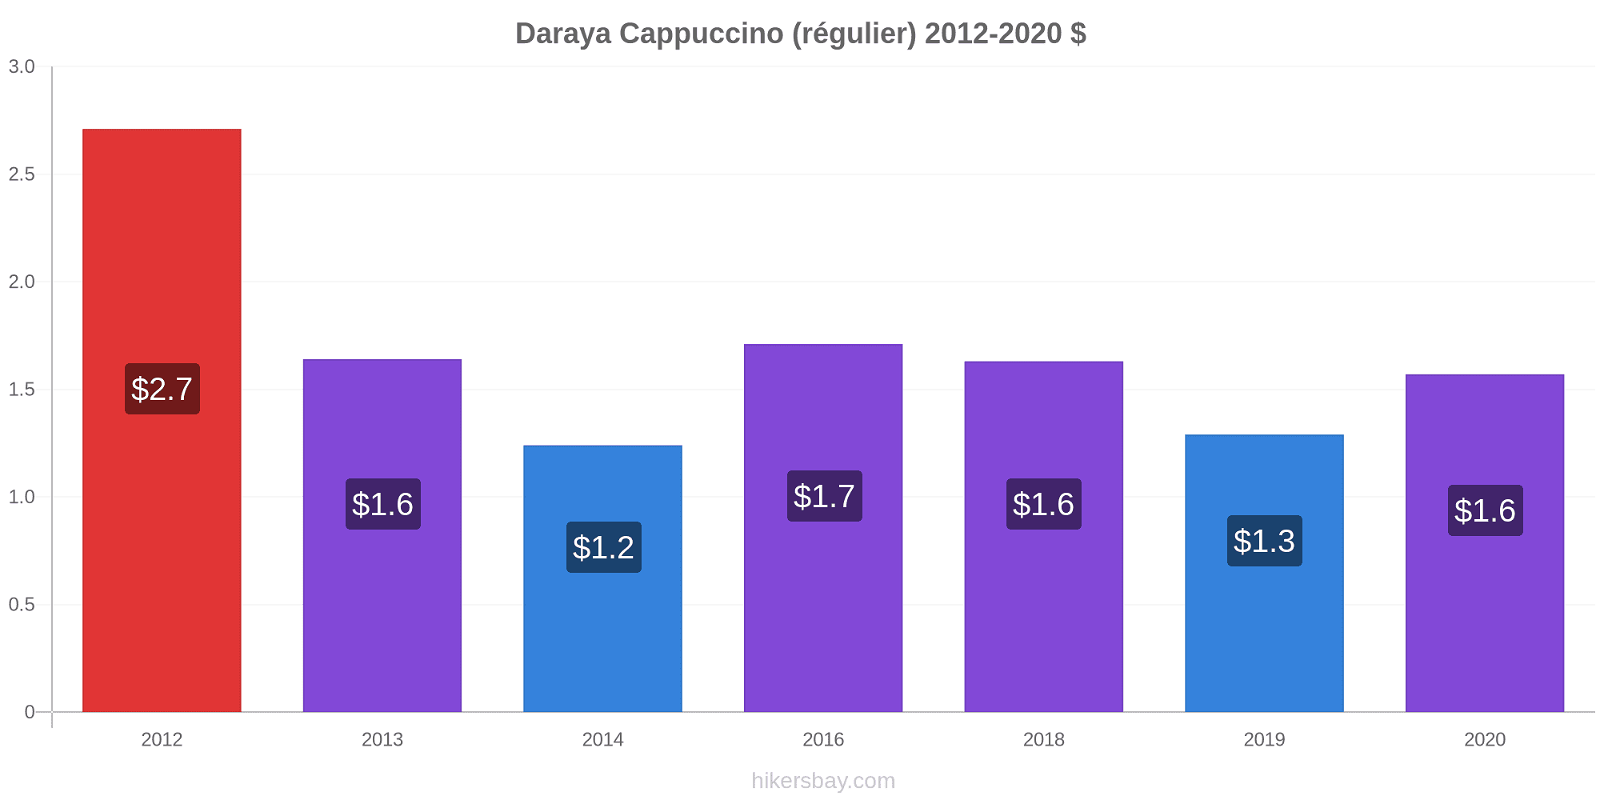 Daraya changements de prix Cappuccino (régulier) hikersbay.com